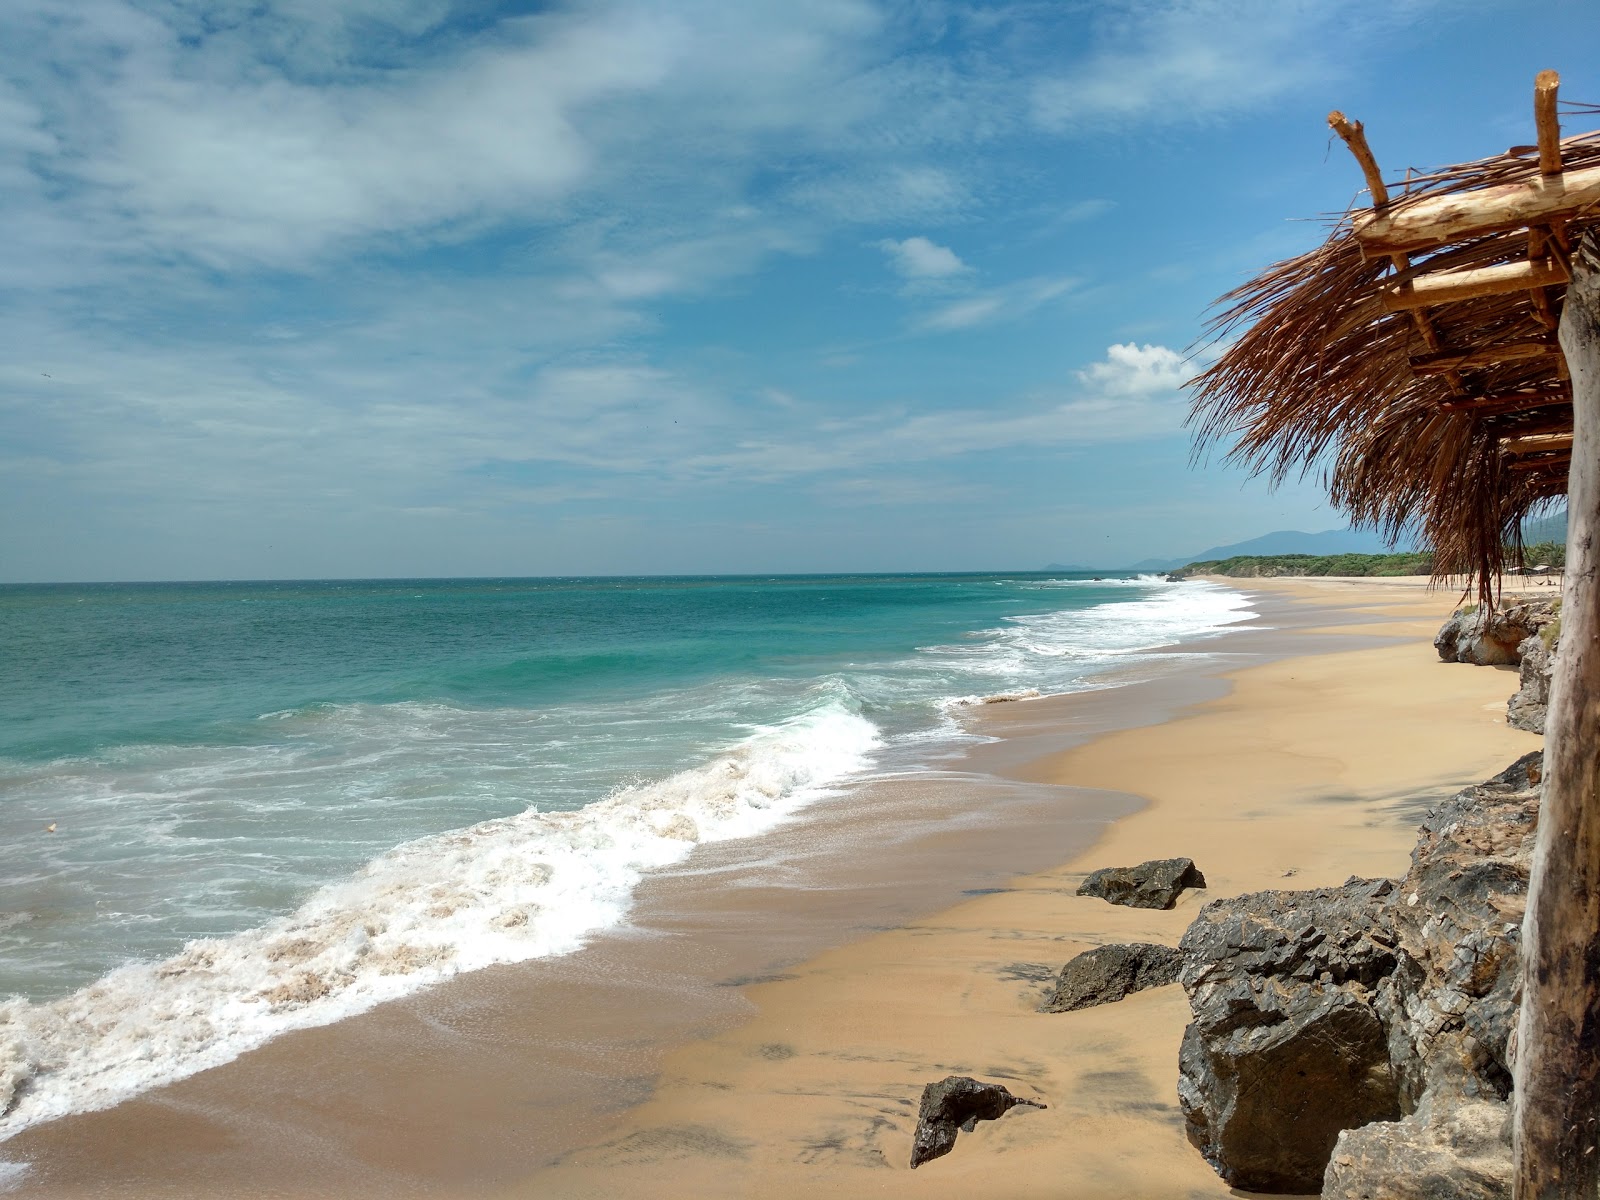 Ixtapilla beach'in fotoğrafı geniş plaj ile birlikte